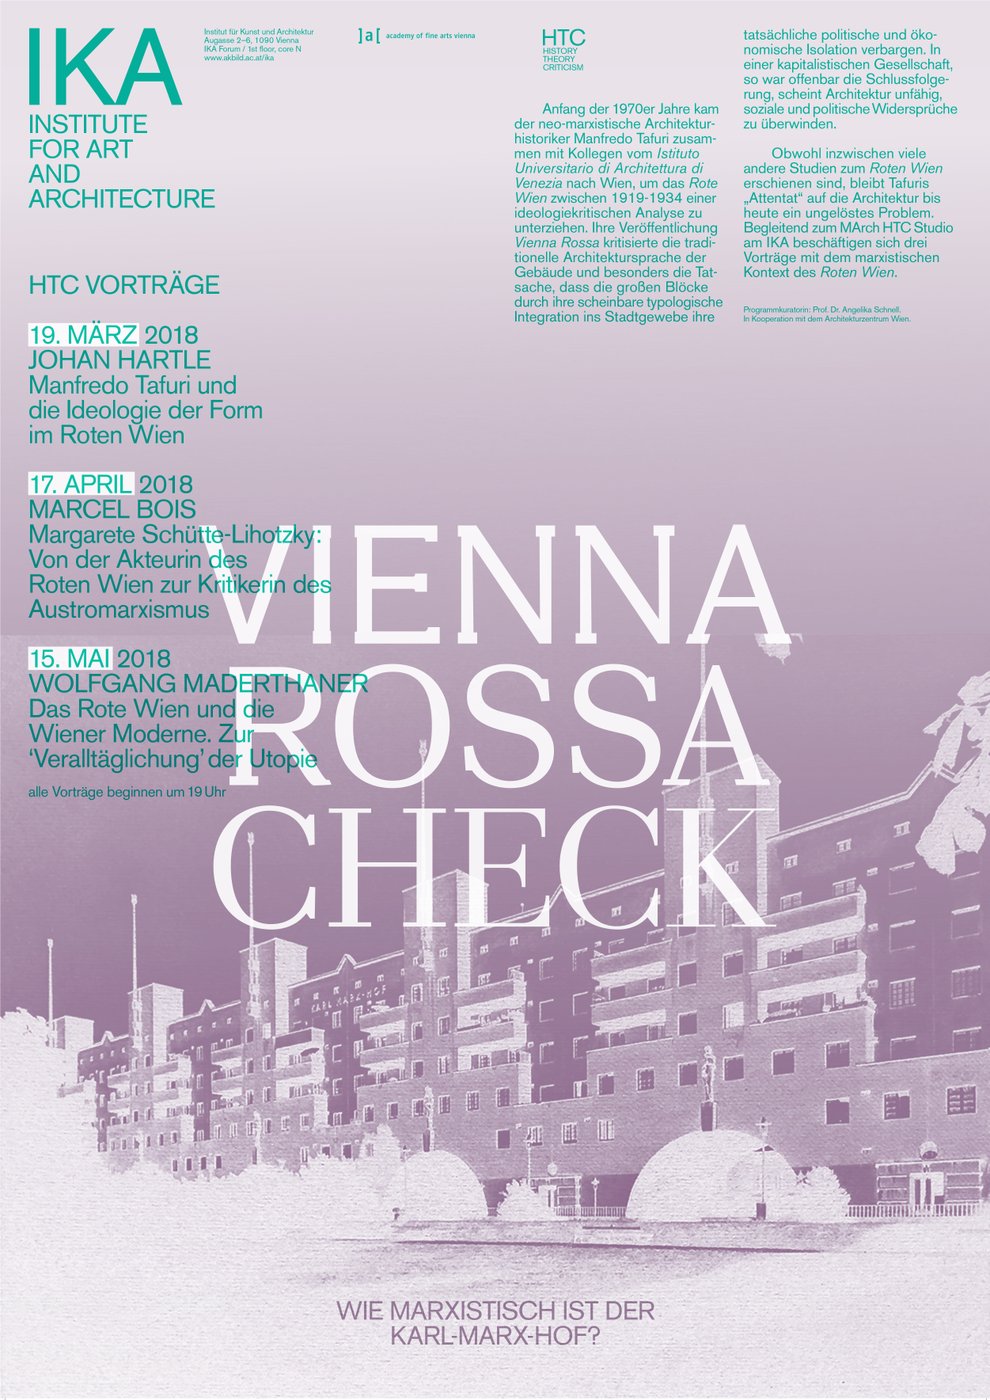 Vortrag von Wolfgang Maderthaner, veranstaltet im Rahmen der  Vortragsreihe „Vienna Rossa Check“ an der Plattform History | Theory |  Criticism (HTC) am Institut für Kunst und Architektur durch Angelika  Schnell und in Zusammenarbeit mit dem Architekturzentrum Wien.